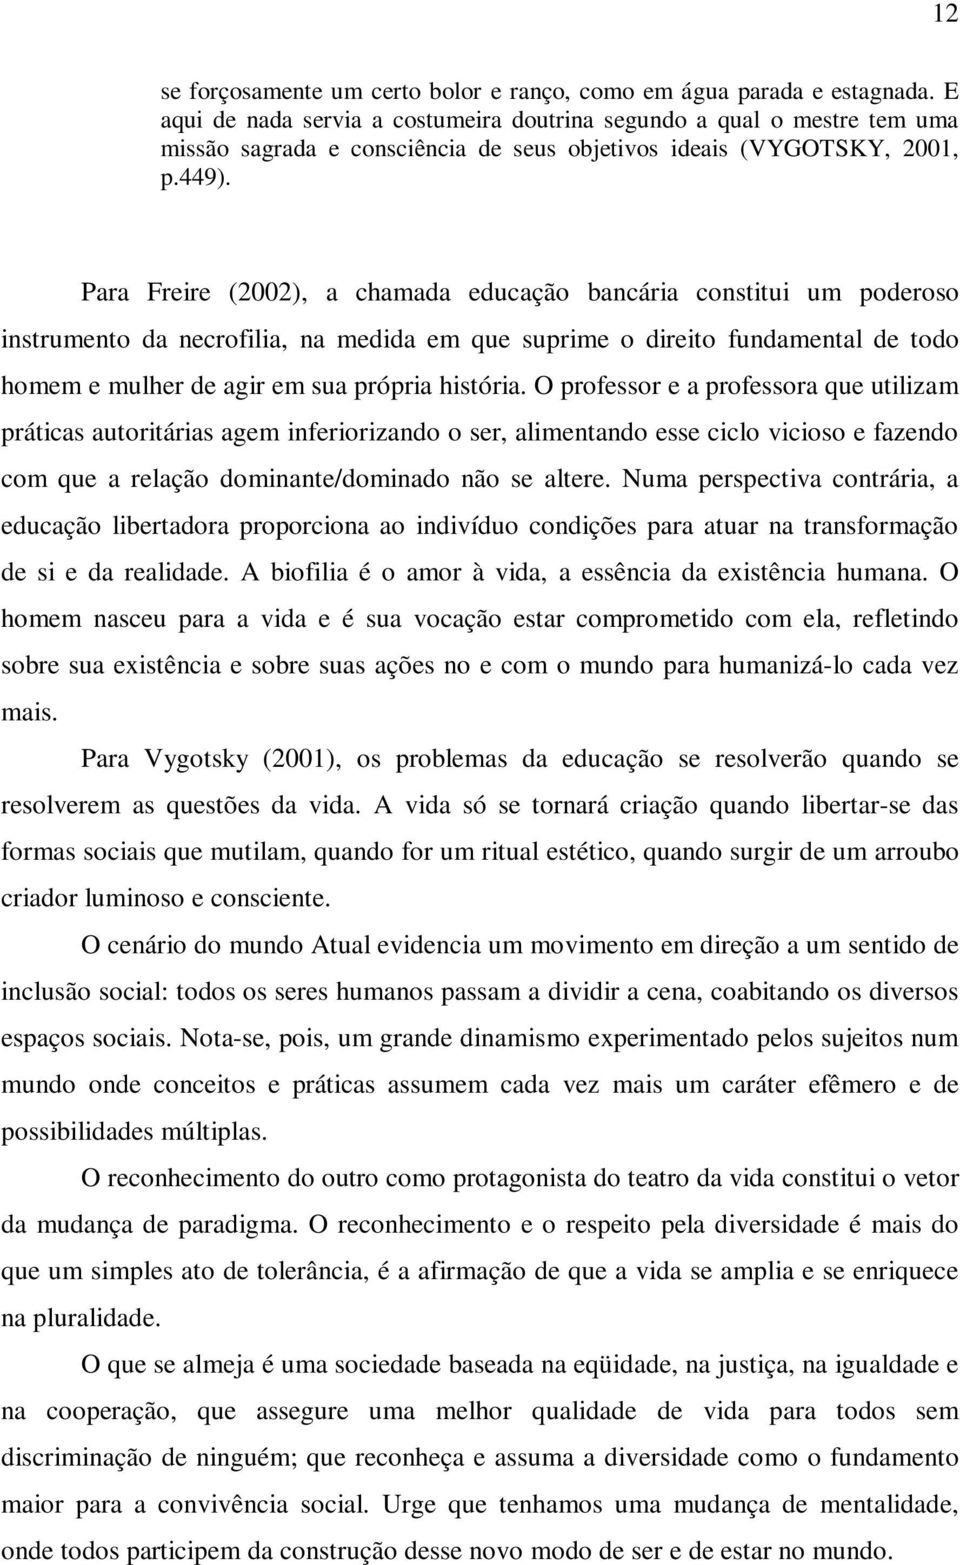 Para Freire (2002), a chamada educação bancária constitui um poderoso instrumento da necrofilia, na medida em que suprime o direito fundamental de todo homem e mulher de agir em sua própria história.